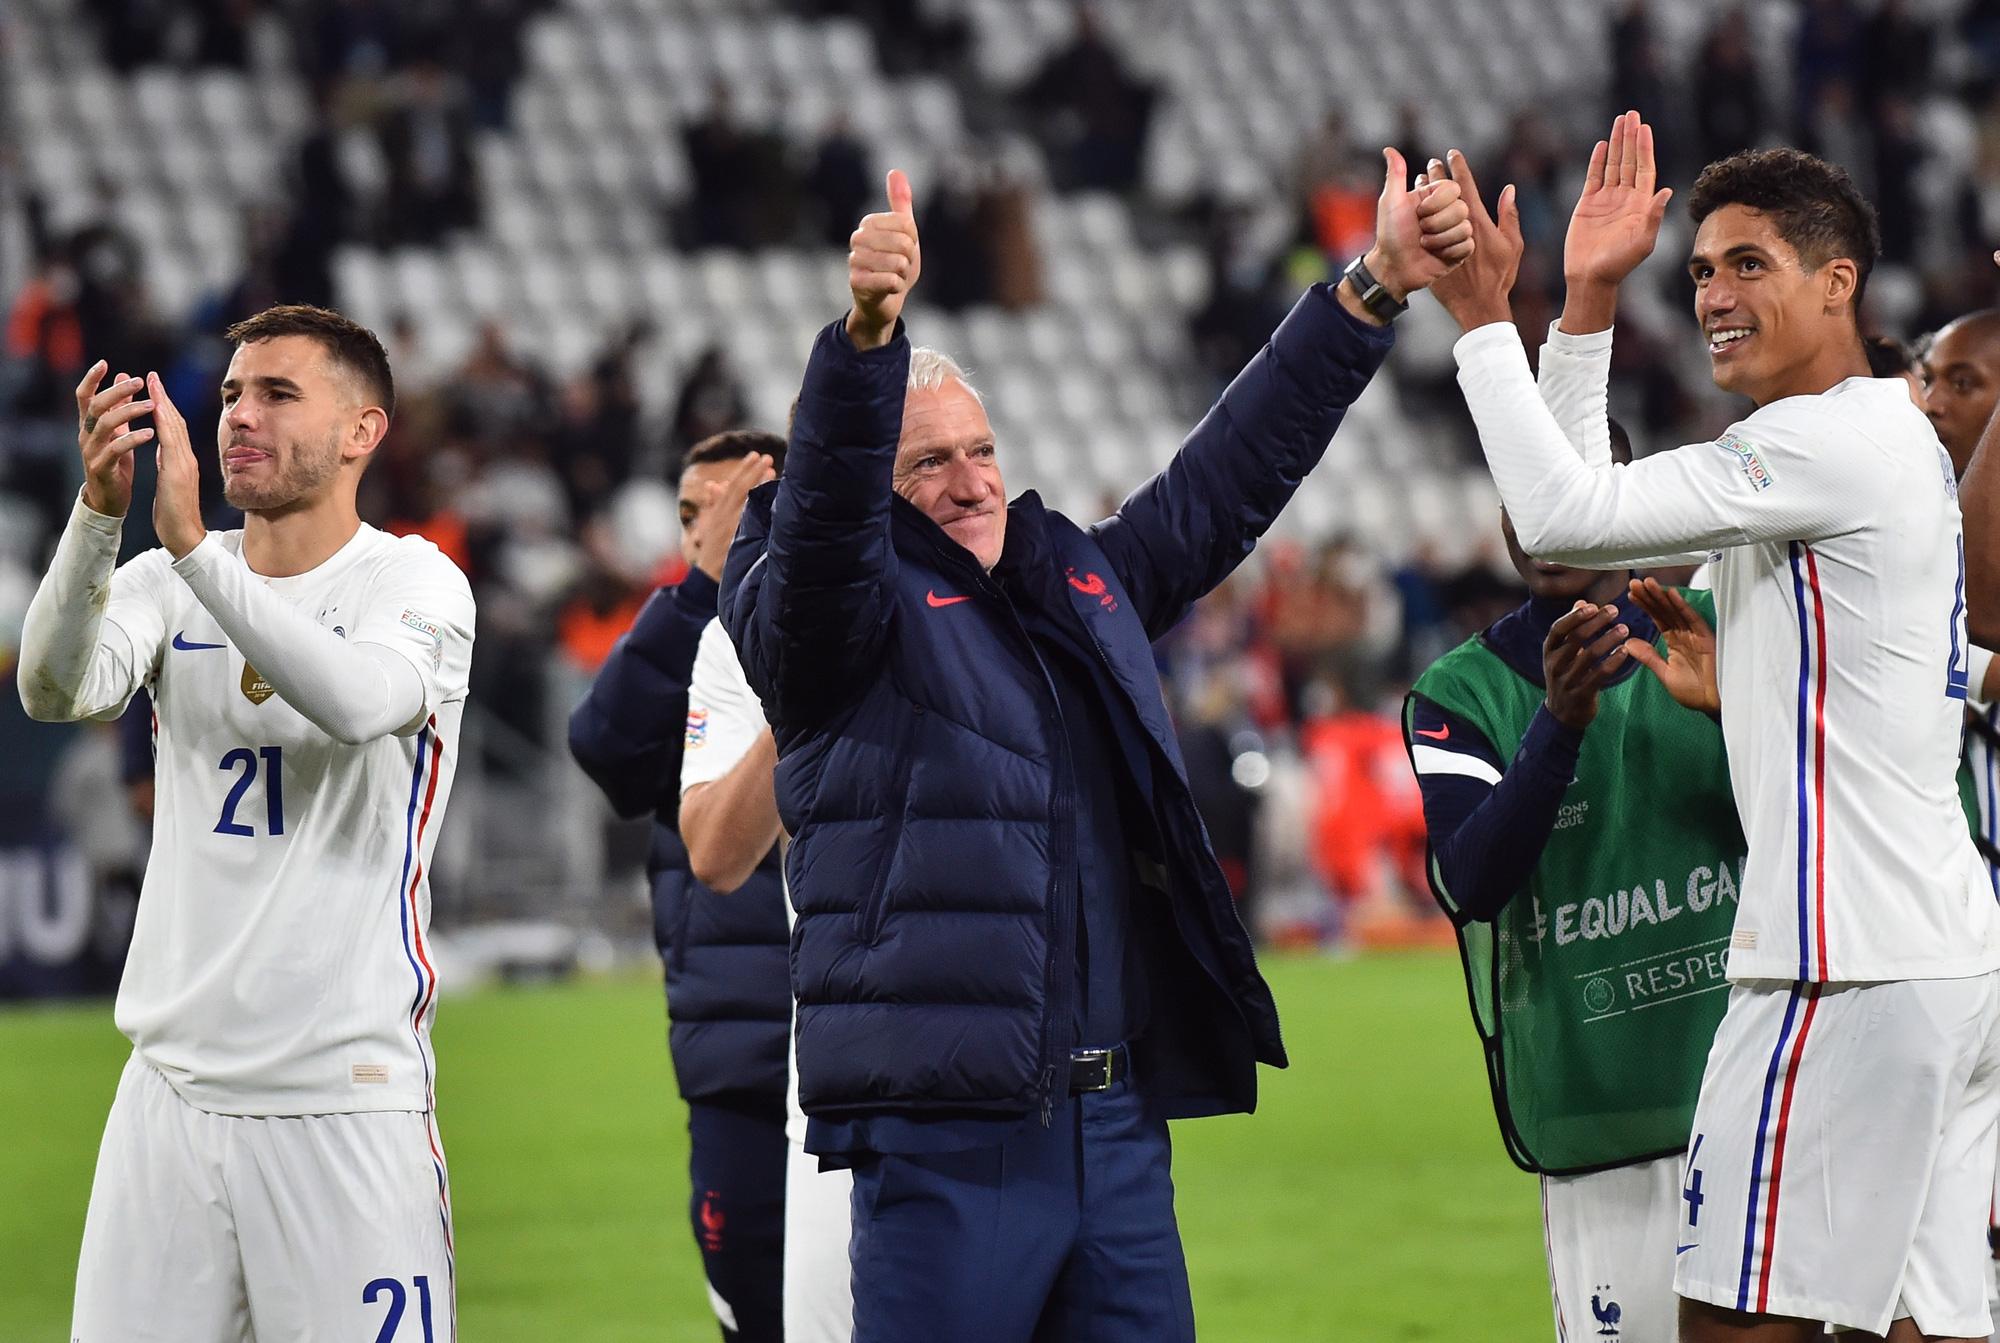 Dàn sao bóng đá Pháp quay lưng với chung kết World Cup - Ảnh 4.